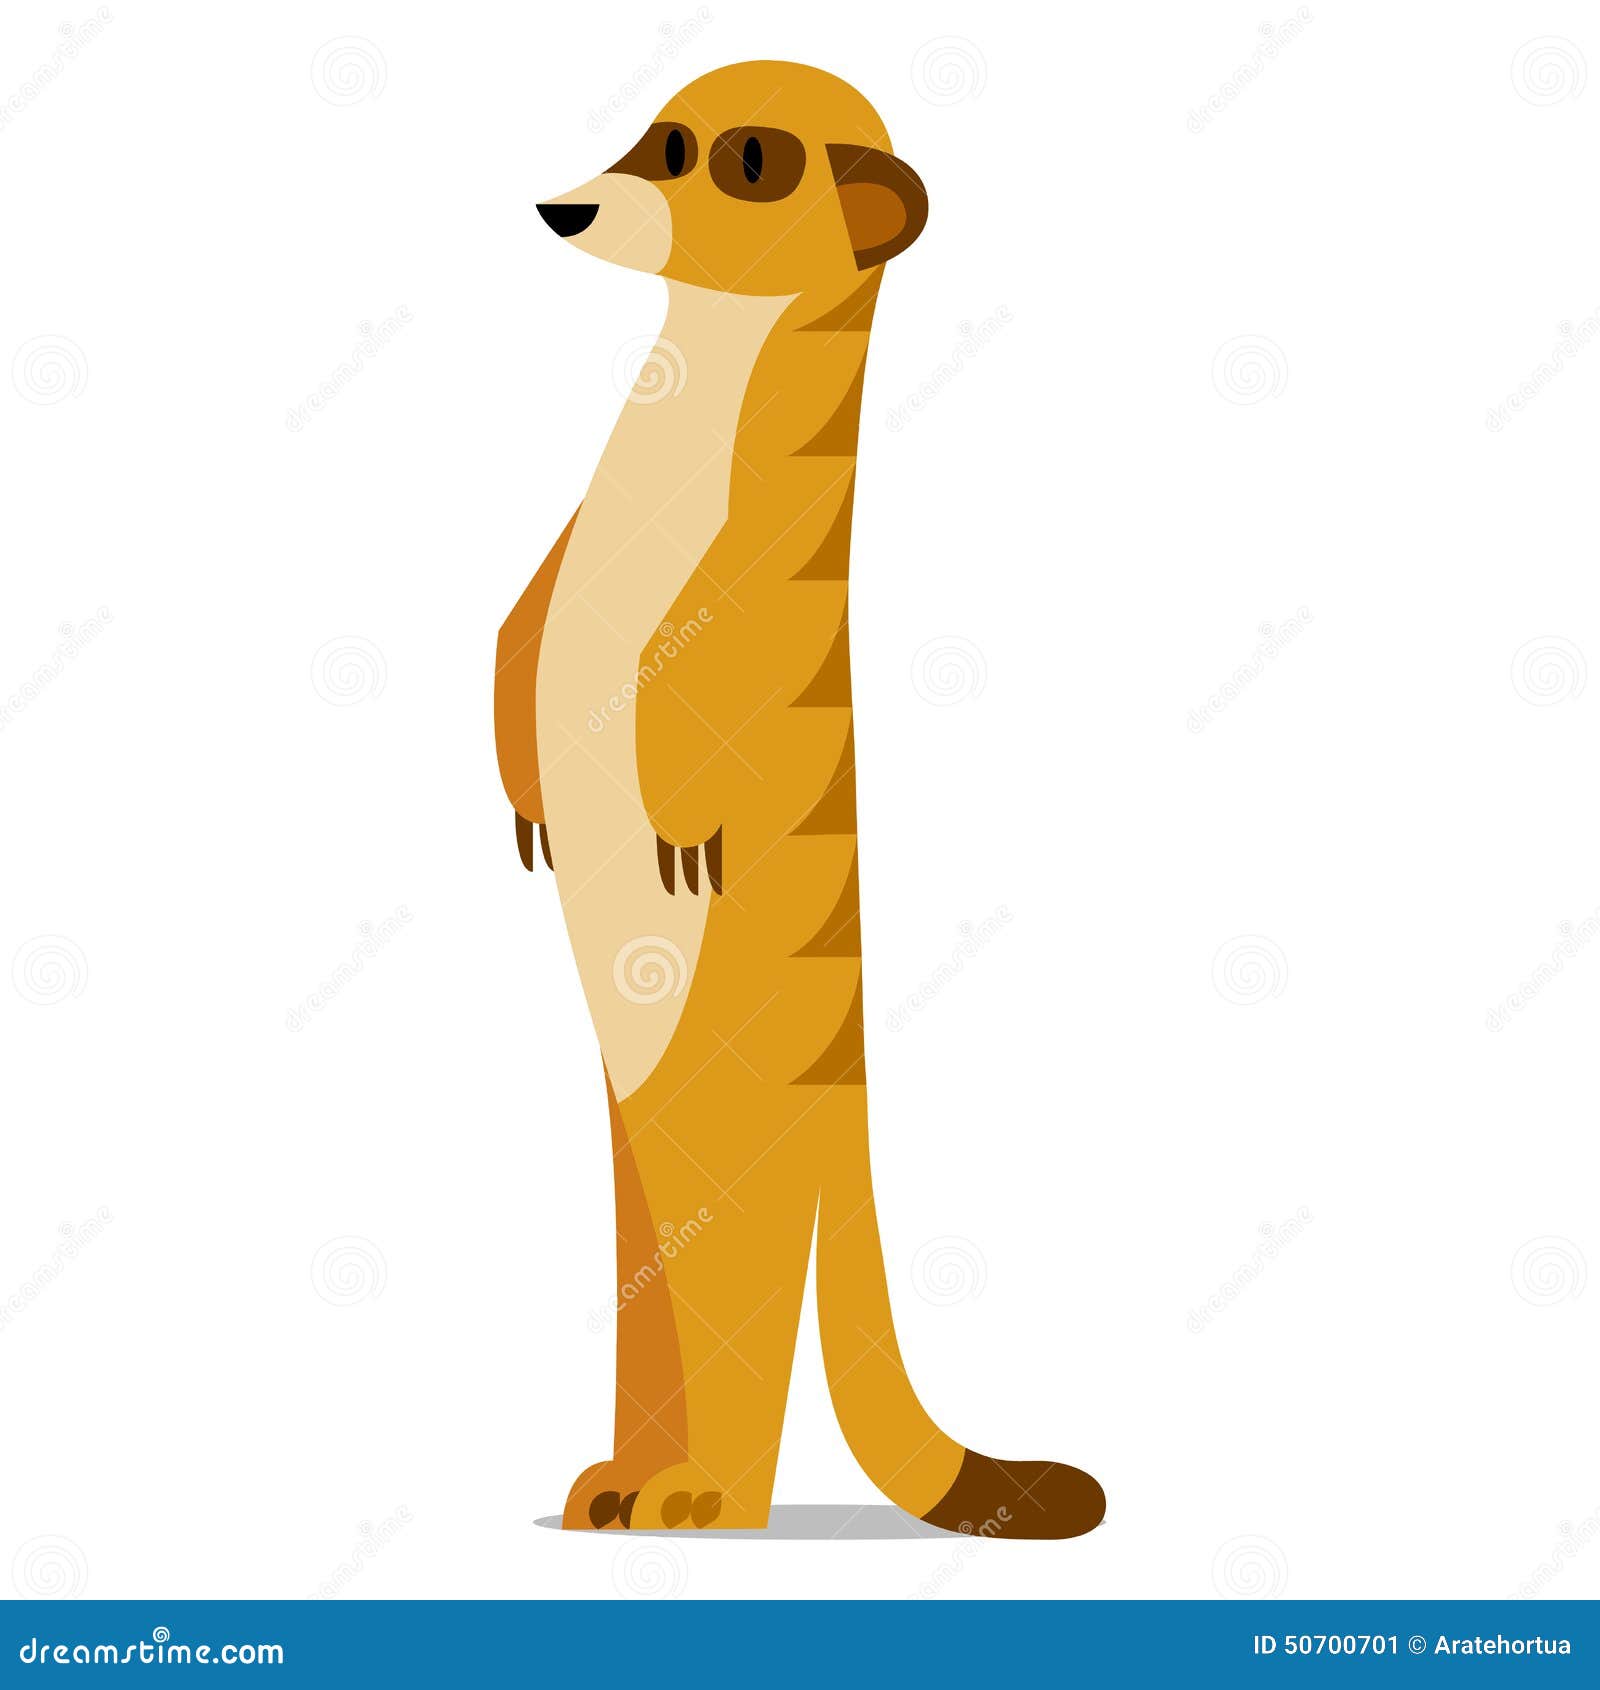 clipart meerkat - photo #8